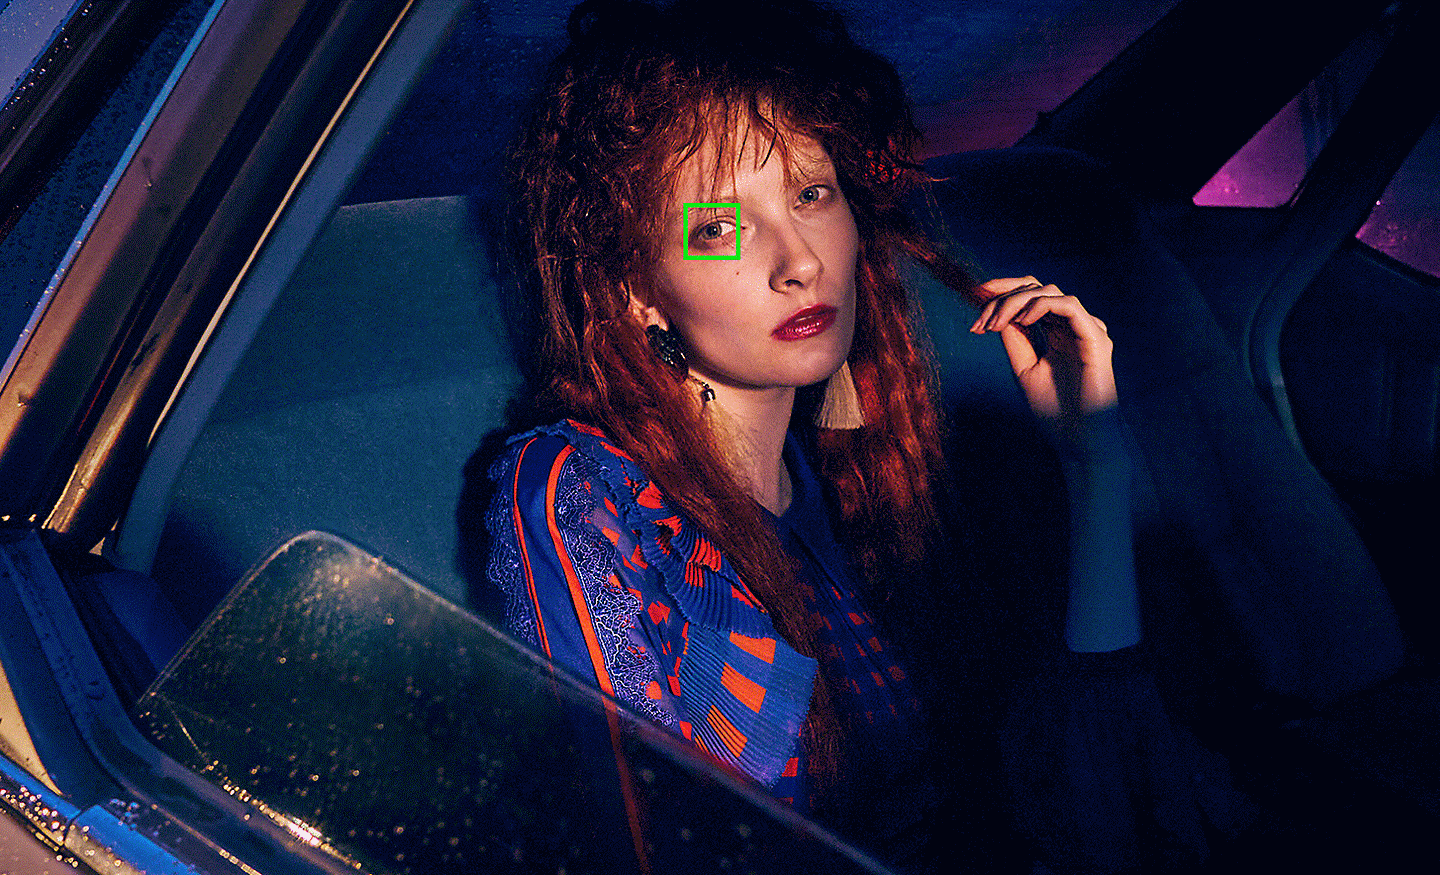 Image représentant une femme dans une voiture dans des conditions de faible luminosité, avec un collimateur vert sur son œil